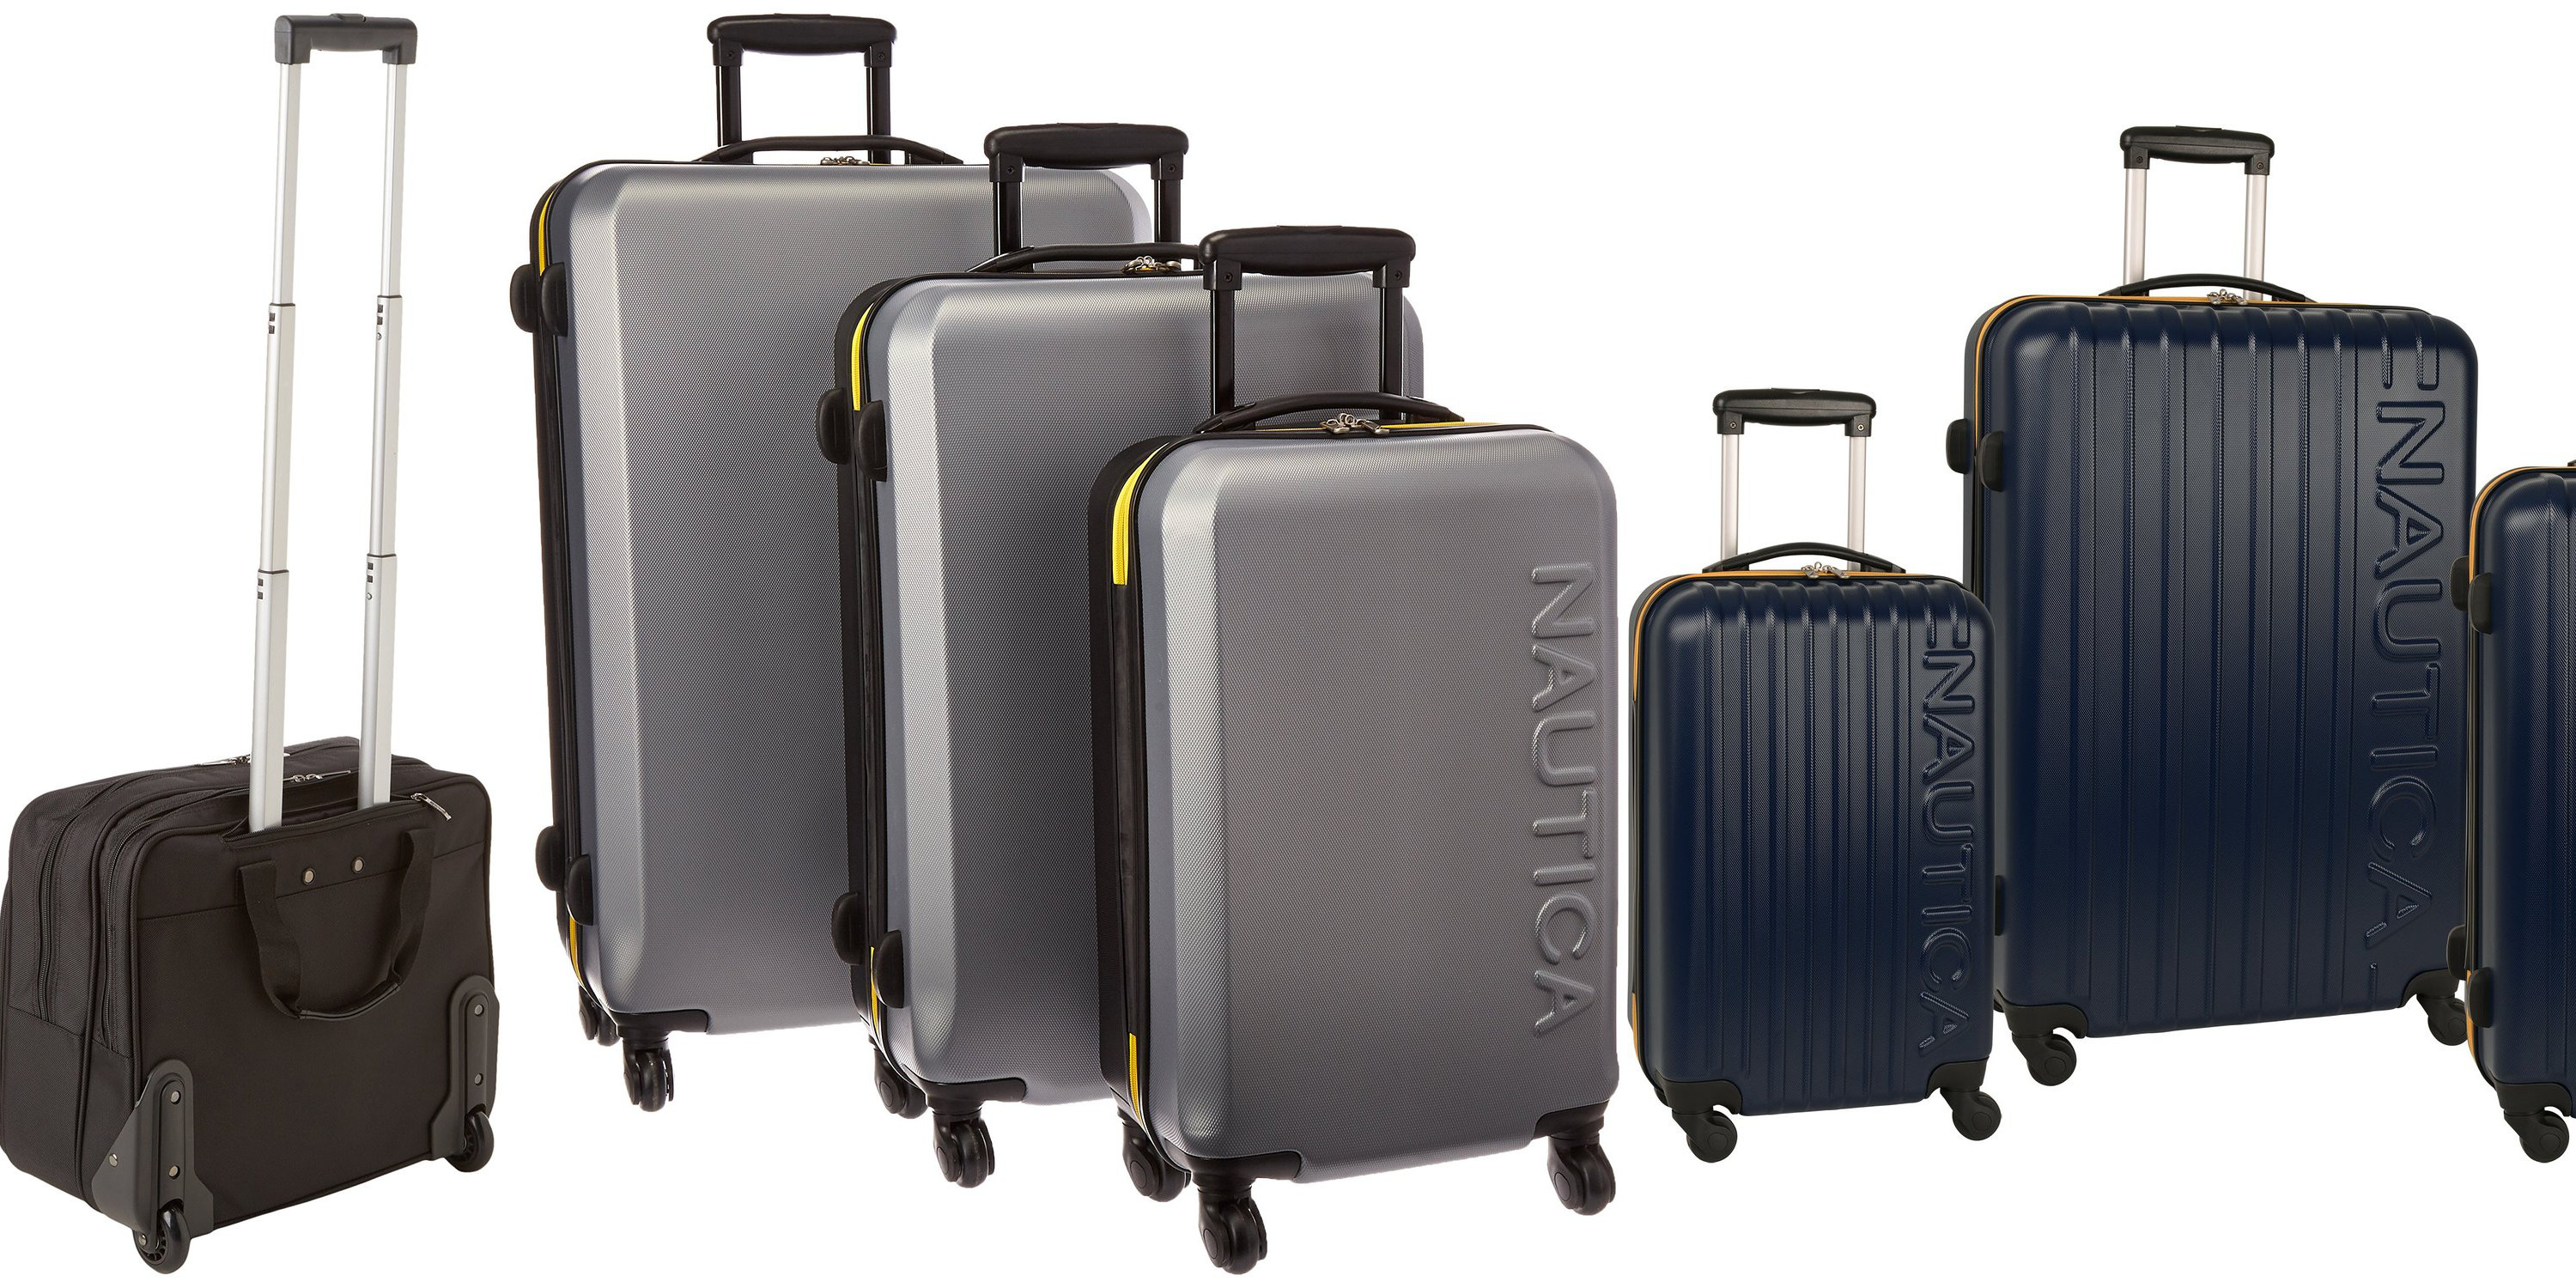 travel gear luggage set